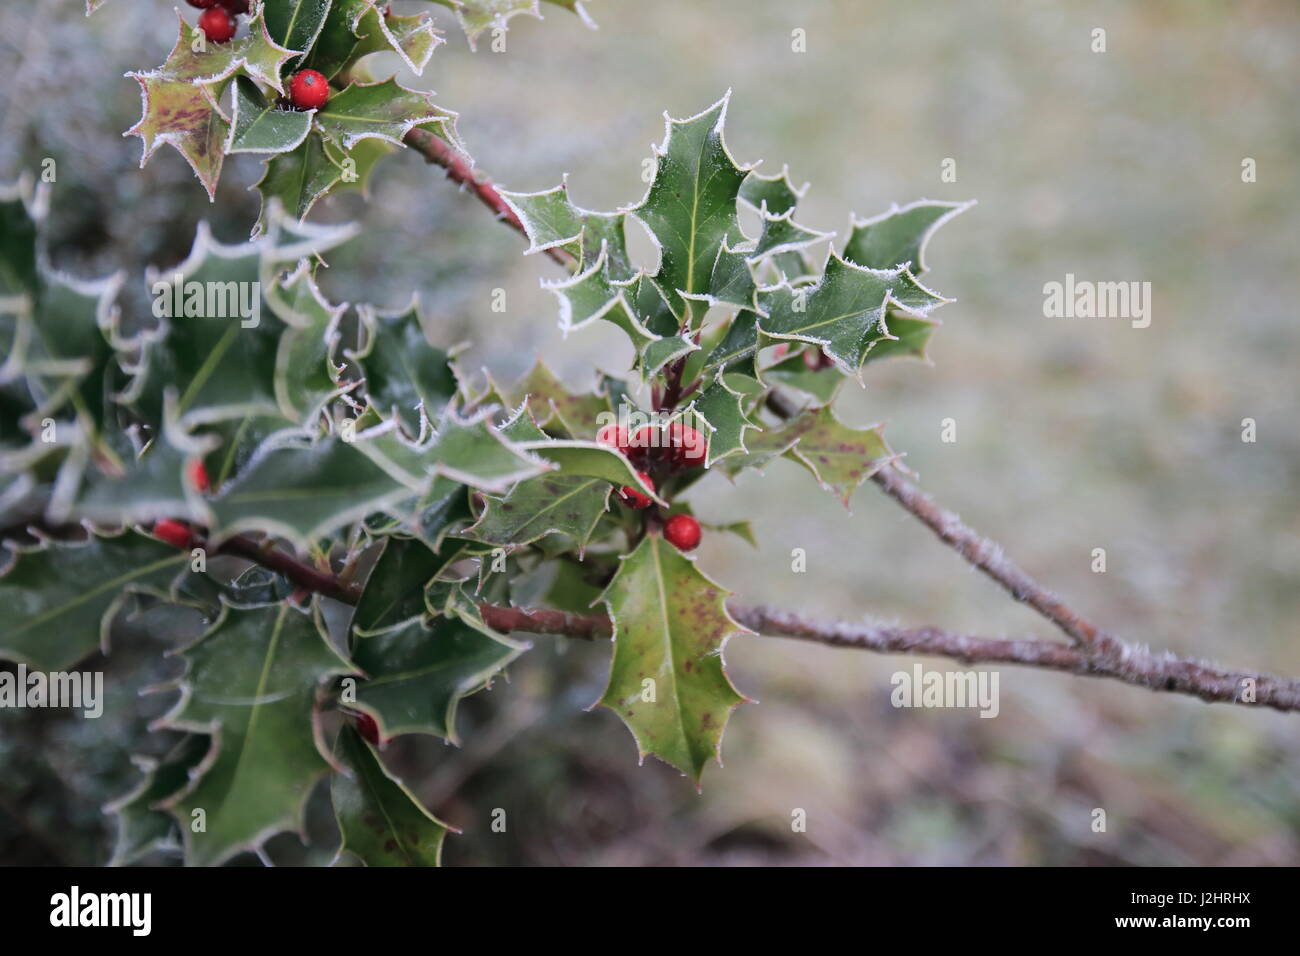 Stechpalme Ilex mit roten Beeren und Rauhreif an den stacheligen Blättern Stock Photo